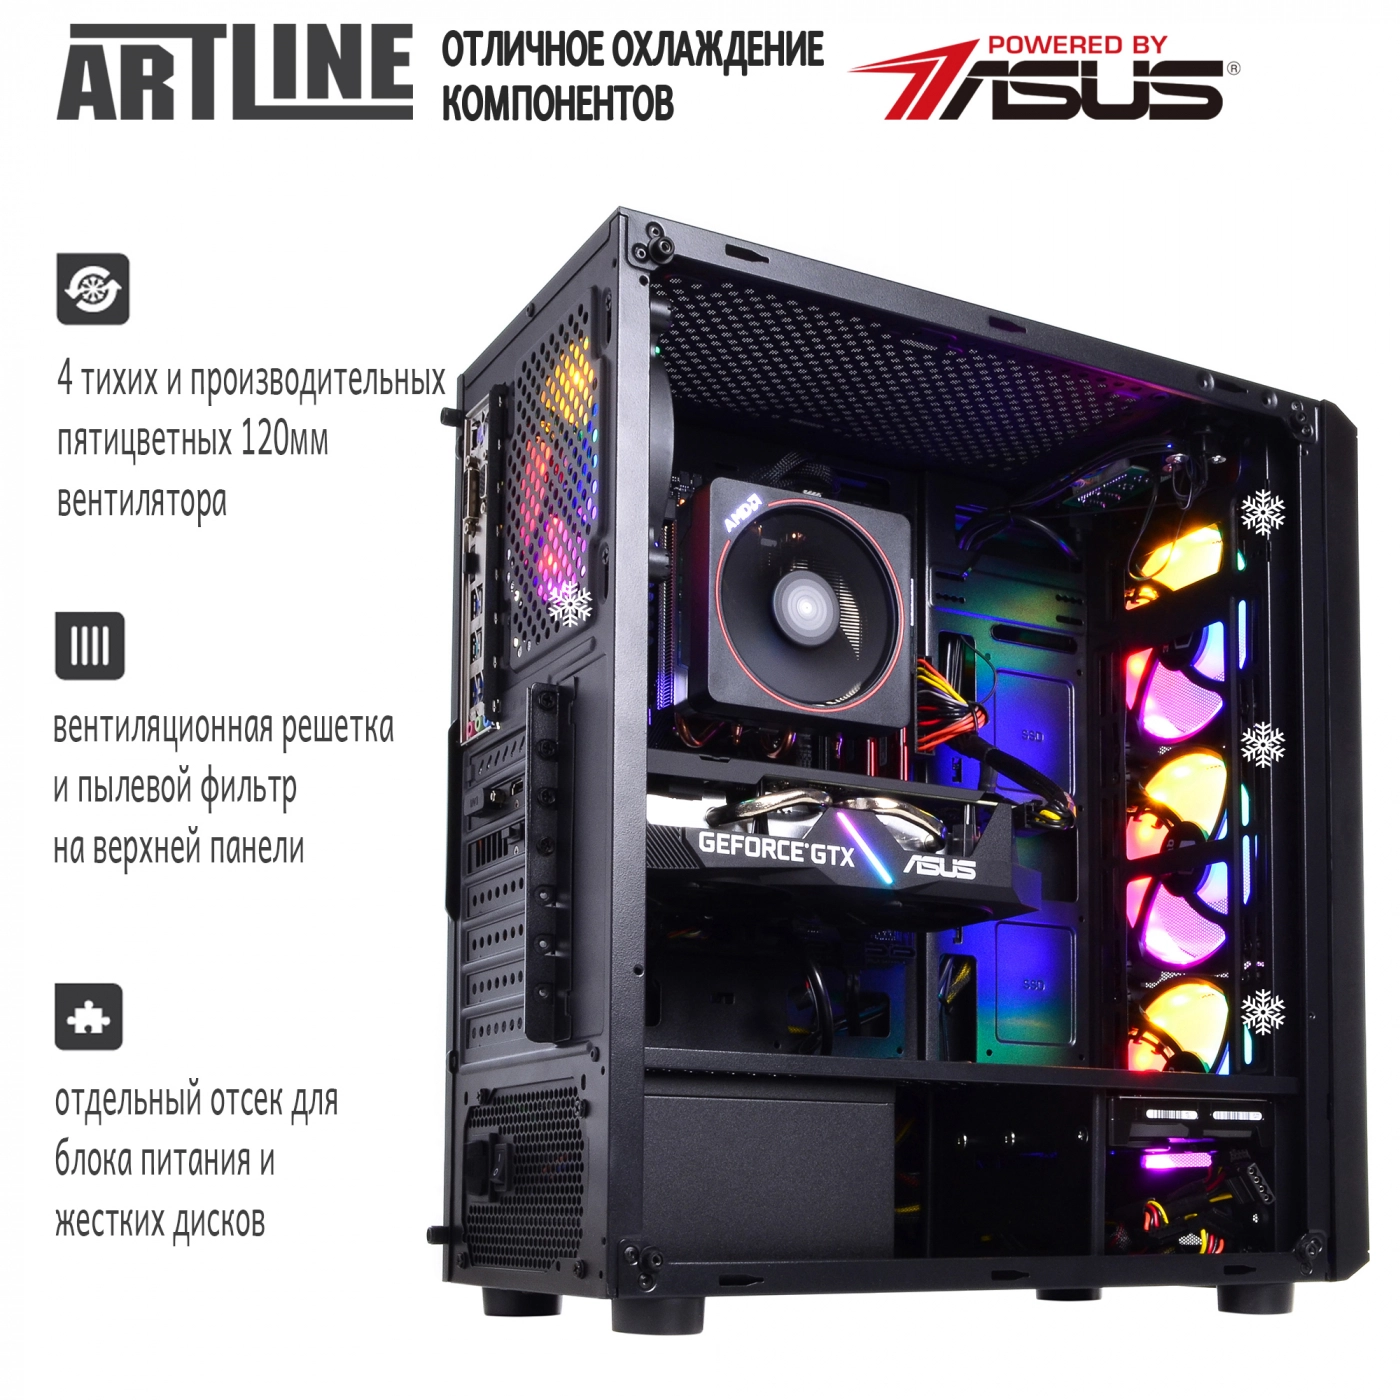 Купить Компьютер ARTLINE Gaming X69v04 - фото 5